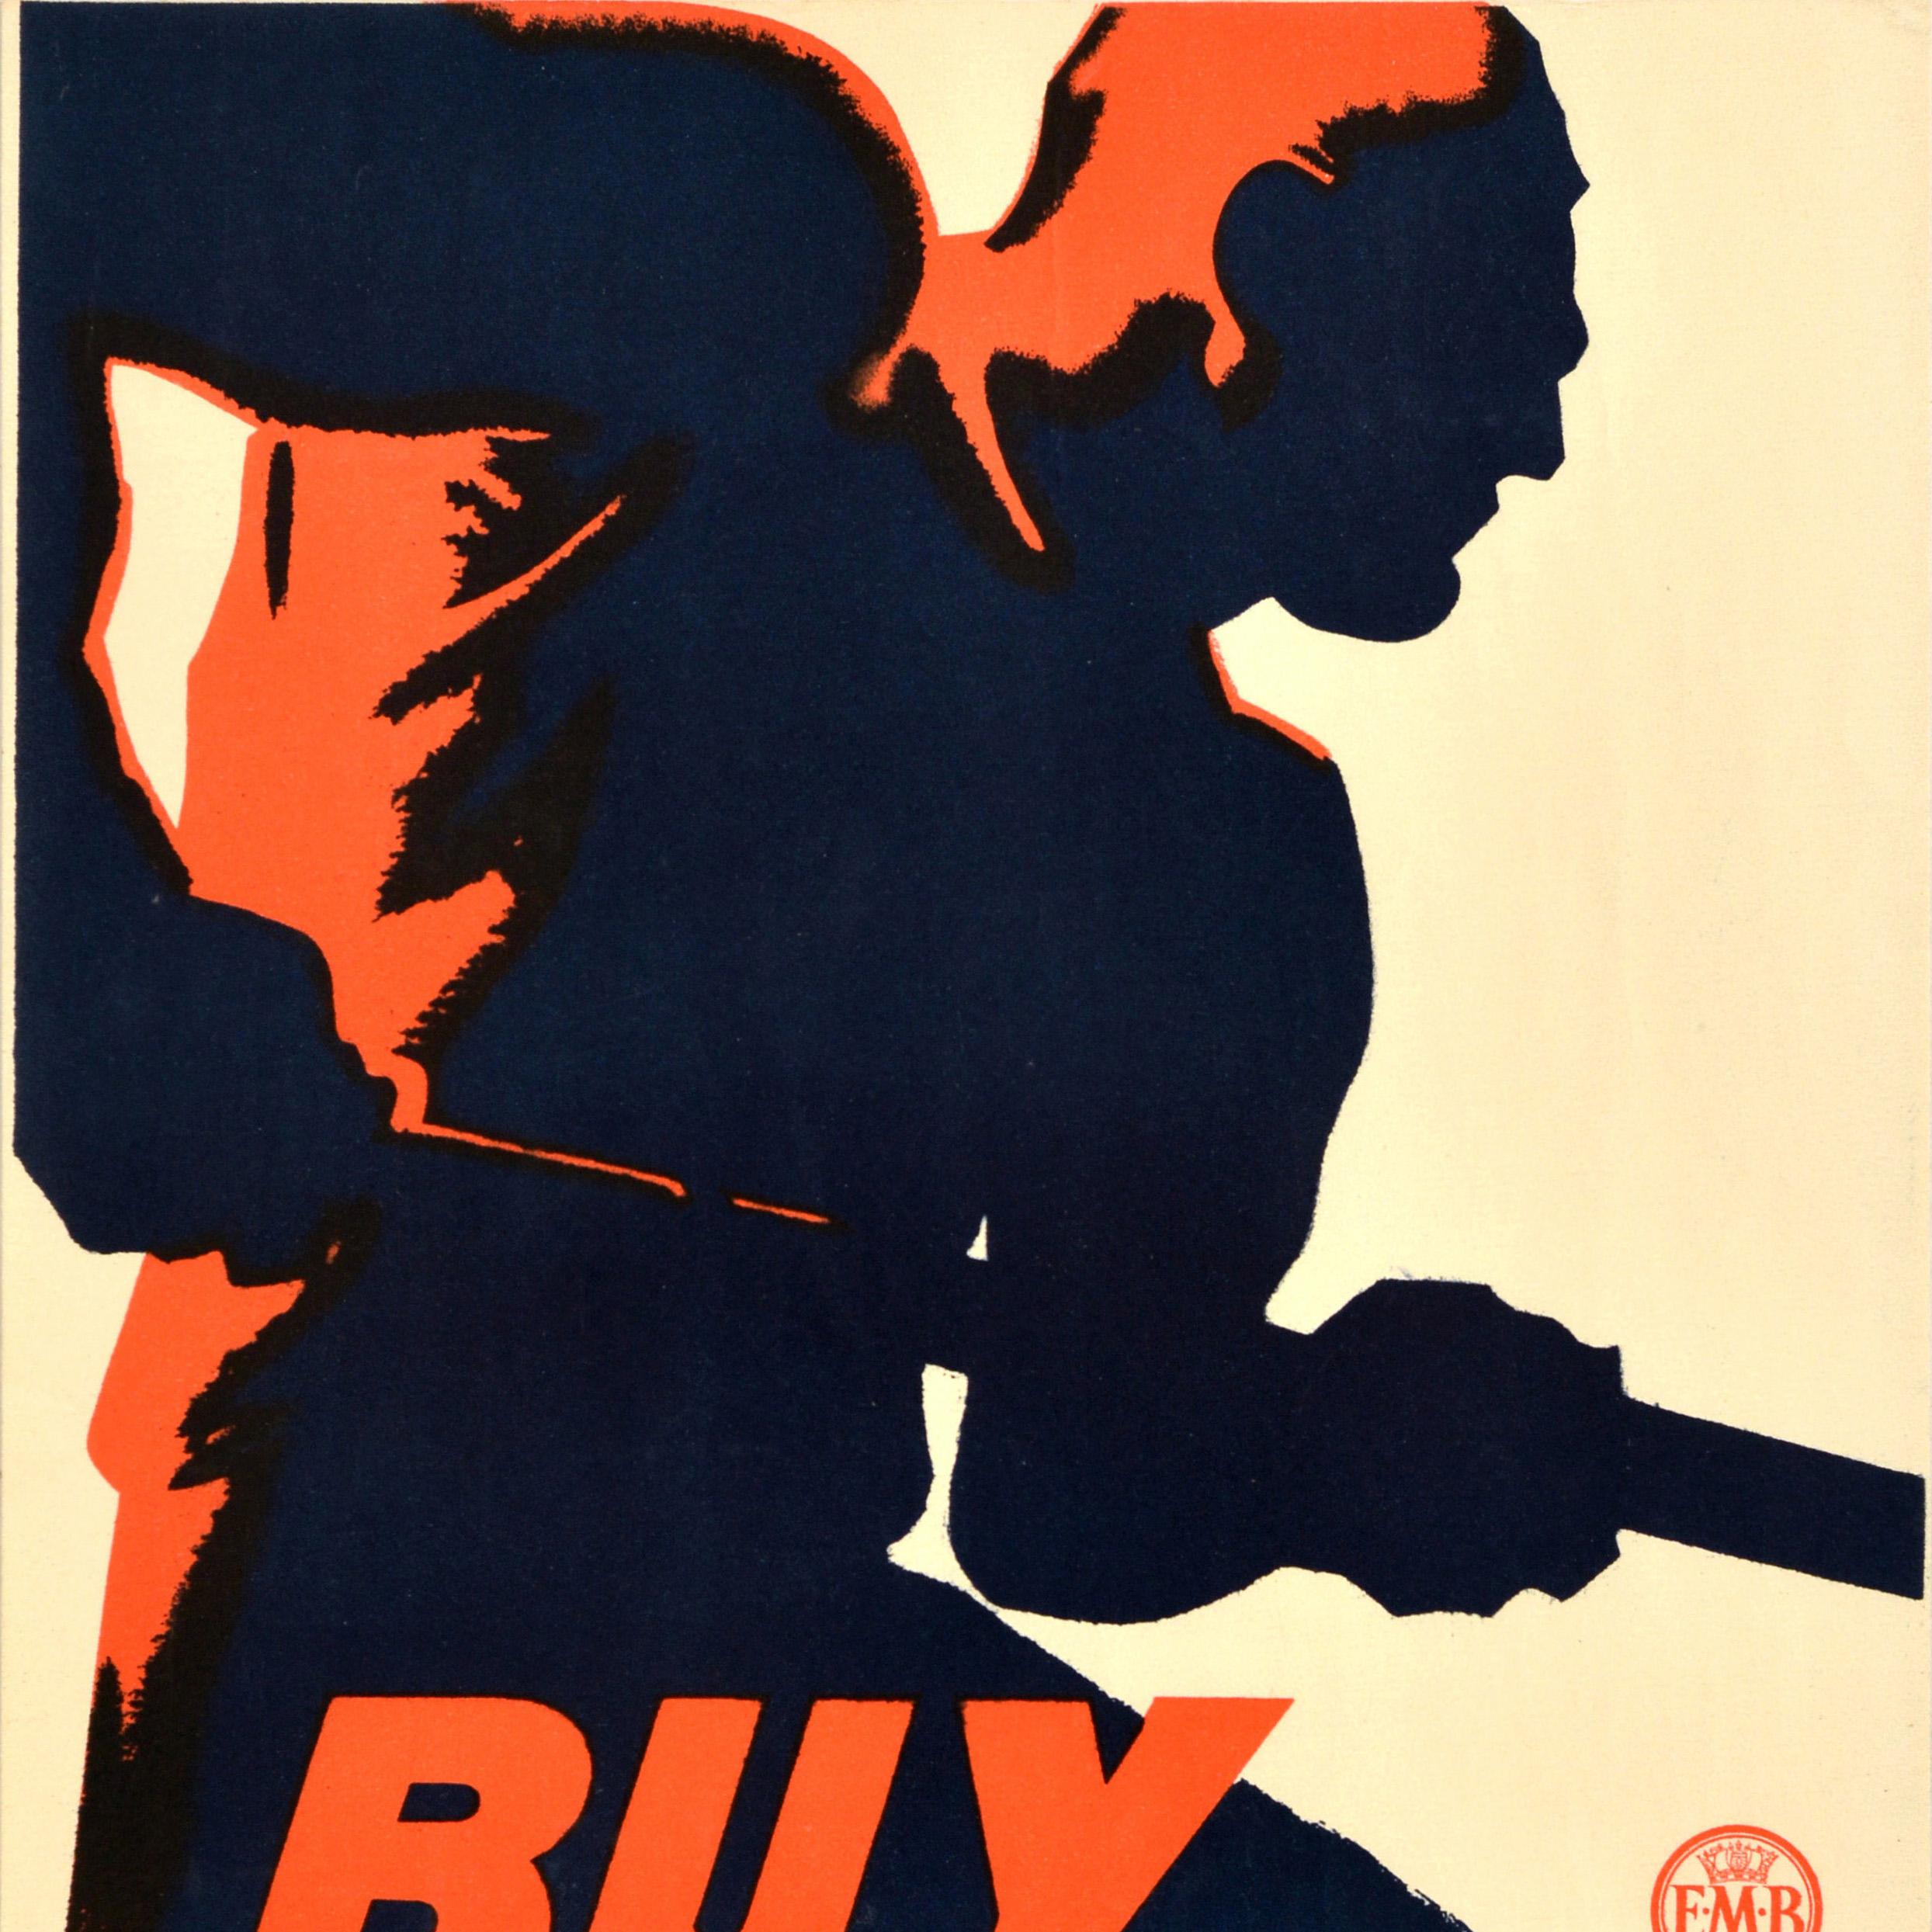 Originales Vintage-Plakat, das vom Empire Marketing Board EMB herausgegeben wurde, um die Menschen zu ermutigen, die Wirtschaft nach der Großen Depression in Amerika durch den Kauf britischer Waren zu unterstützen - Buy British from the Empire at